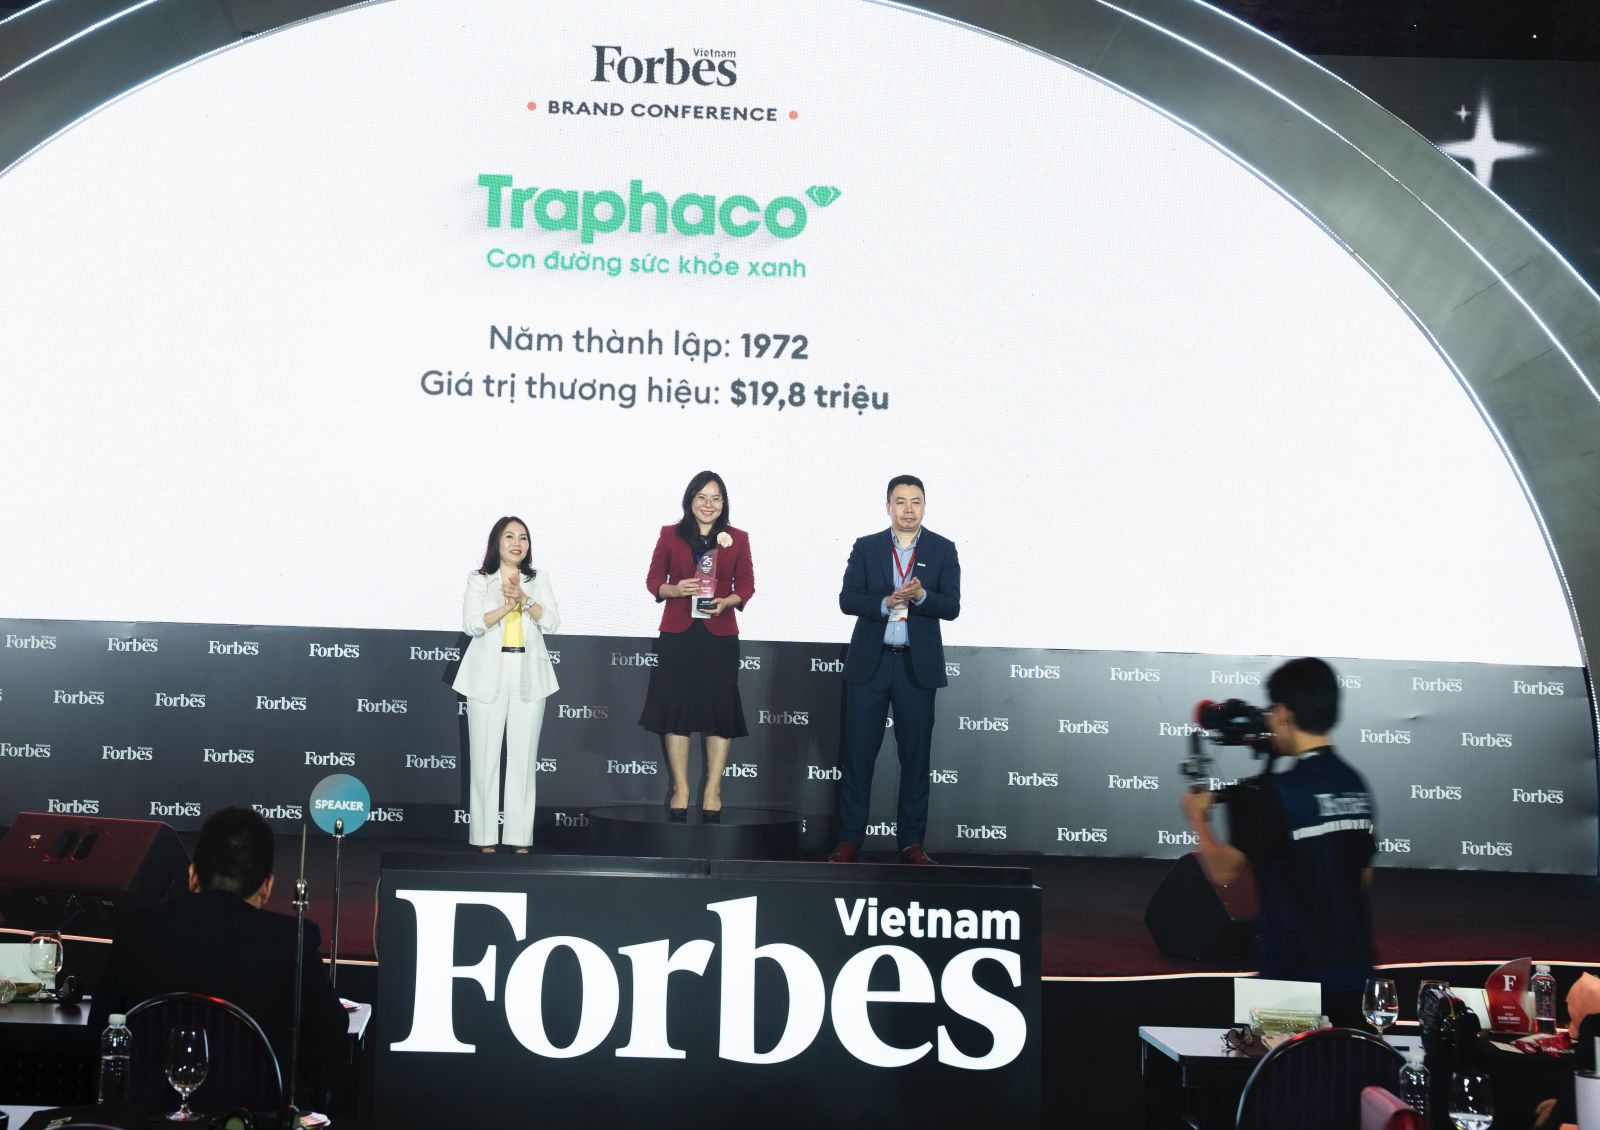 Bà Đào Thúy Hà - Phó Tổng Giám đốc Công ty cổ phần Traphaco đại diện công ty nhận Cúp vinh danh 